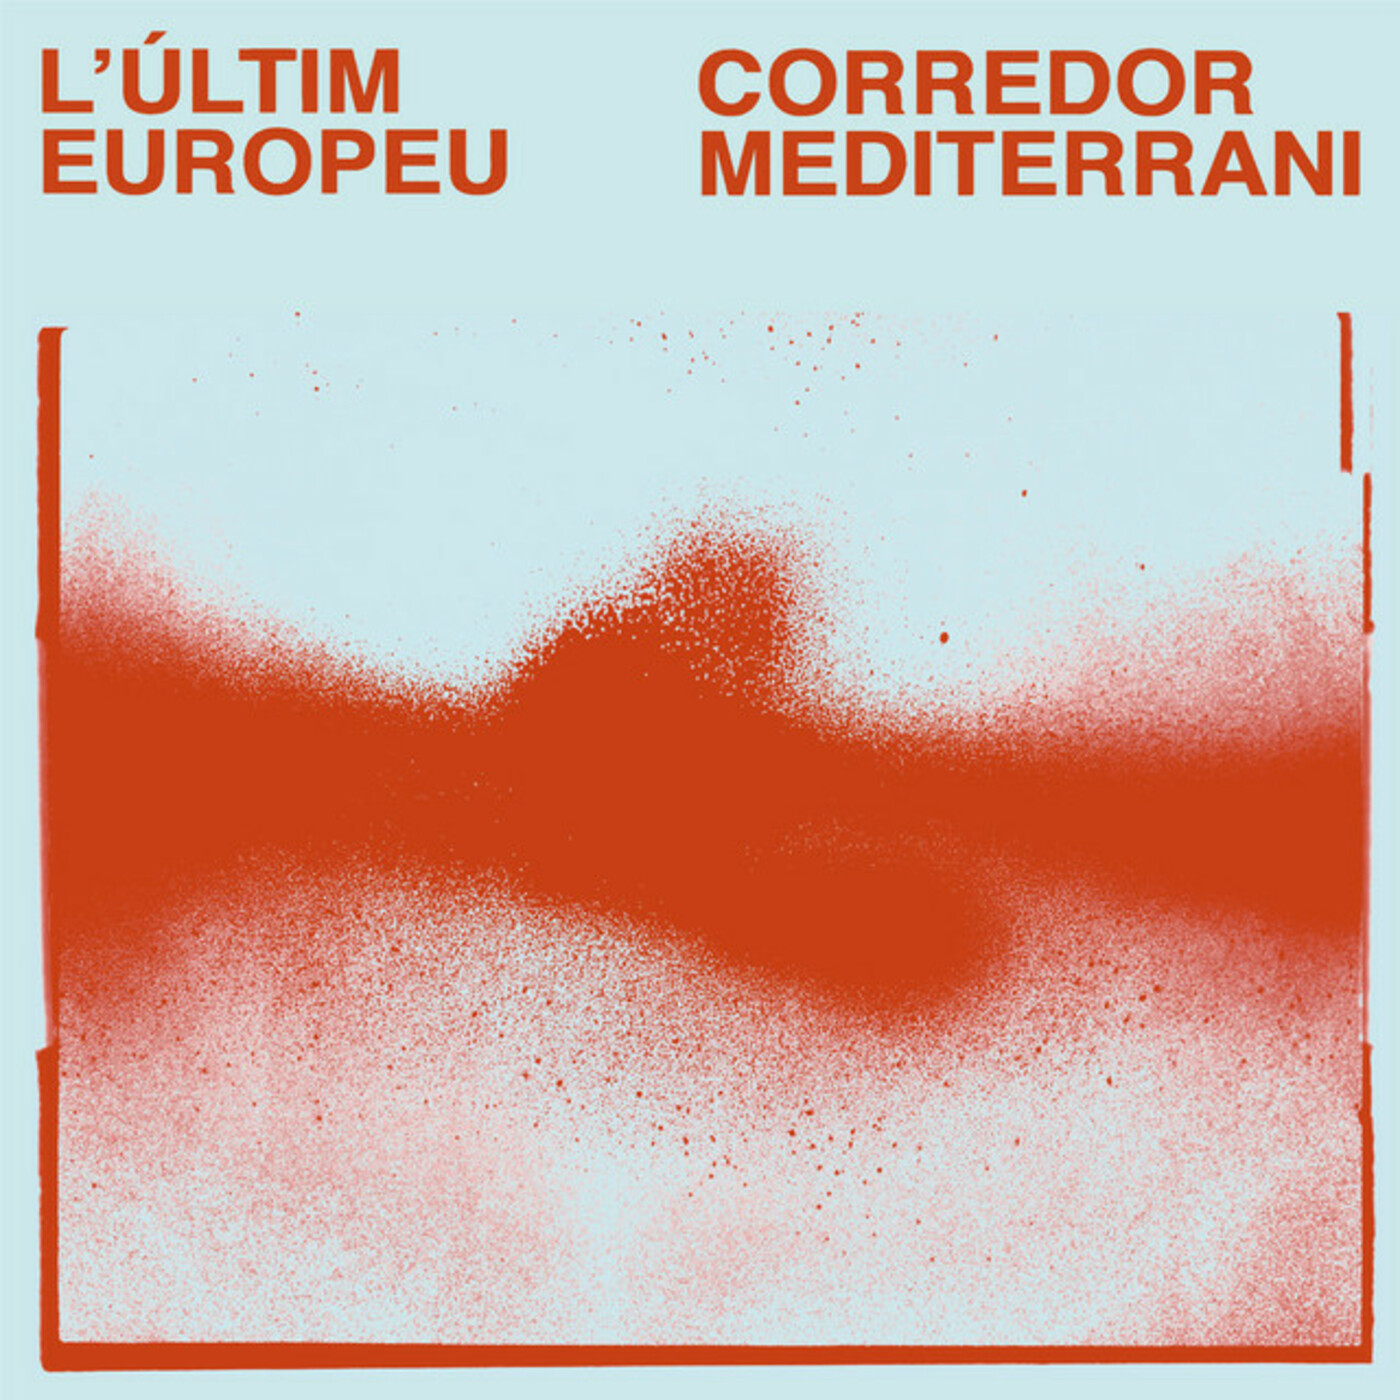 L'Últim Europeu - Corredor mediterrani | musica en valencià